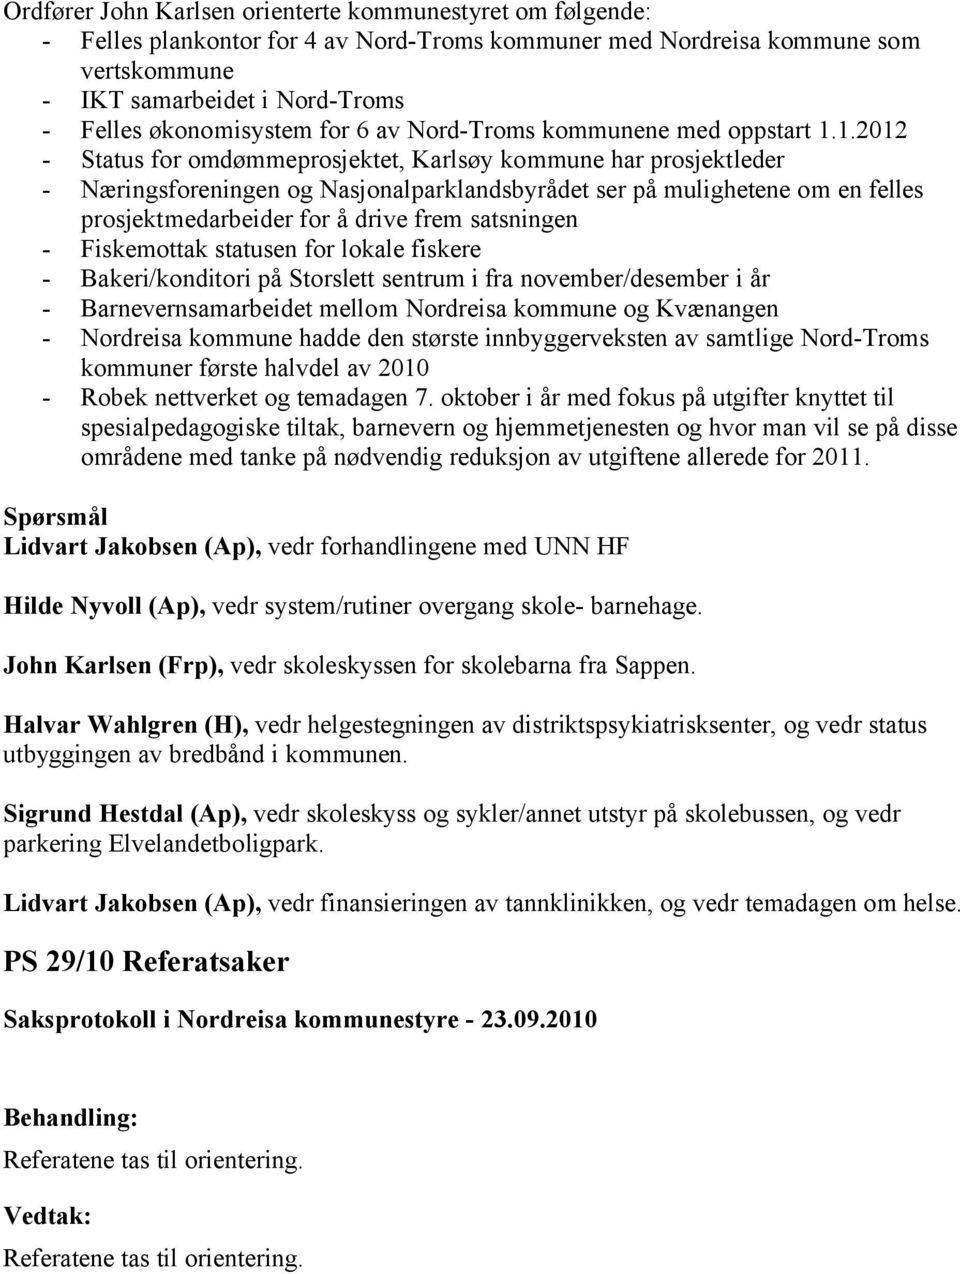 1.2012 - Status for omdømmeprosjektet, Karlsøy kommune har prosjektleder - Næringsforeningen og Nasjonalparklandsbyrådet ser på mulighetene om en felles prosjektmedarbeider for å drive frem